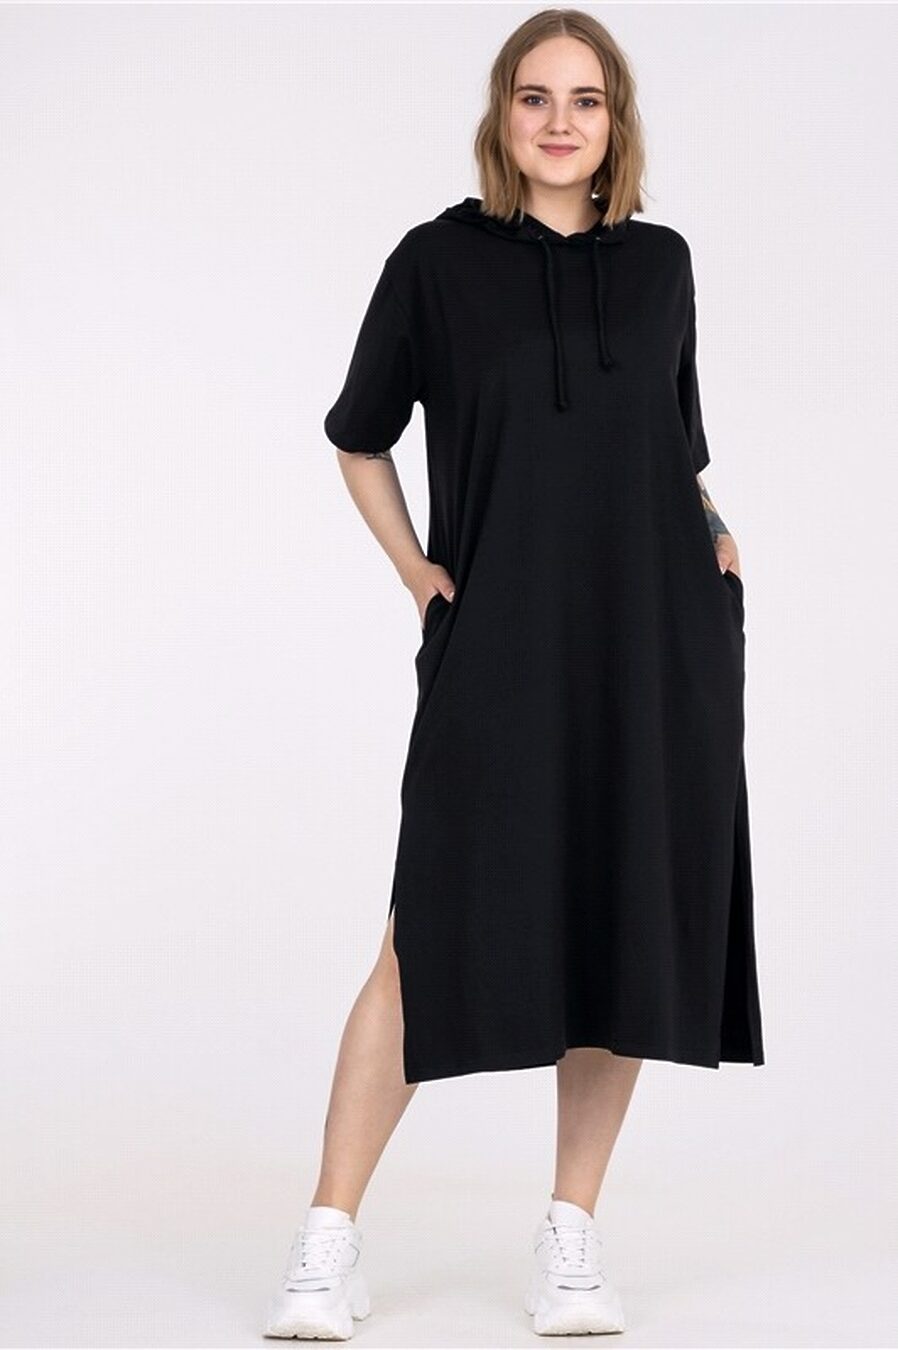 Платье для женщин АПРЕЛЬ 785468 купить оптом от производителя. Совместная покупка женской одежды в OptMoyo